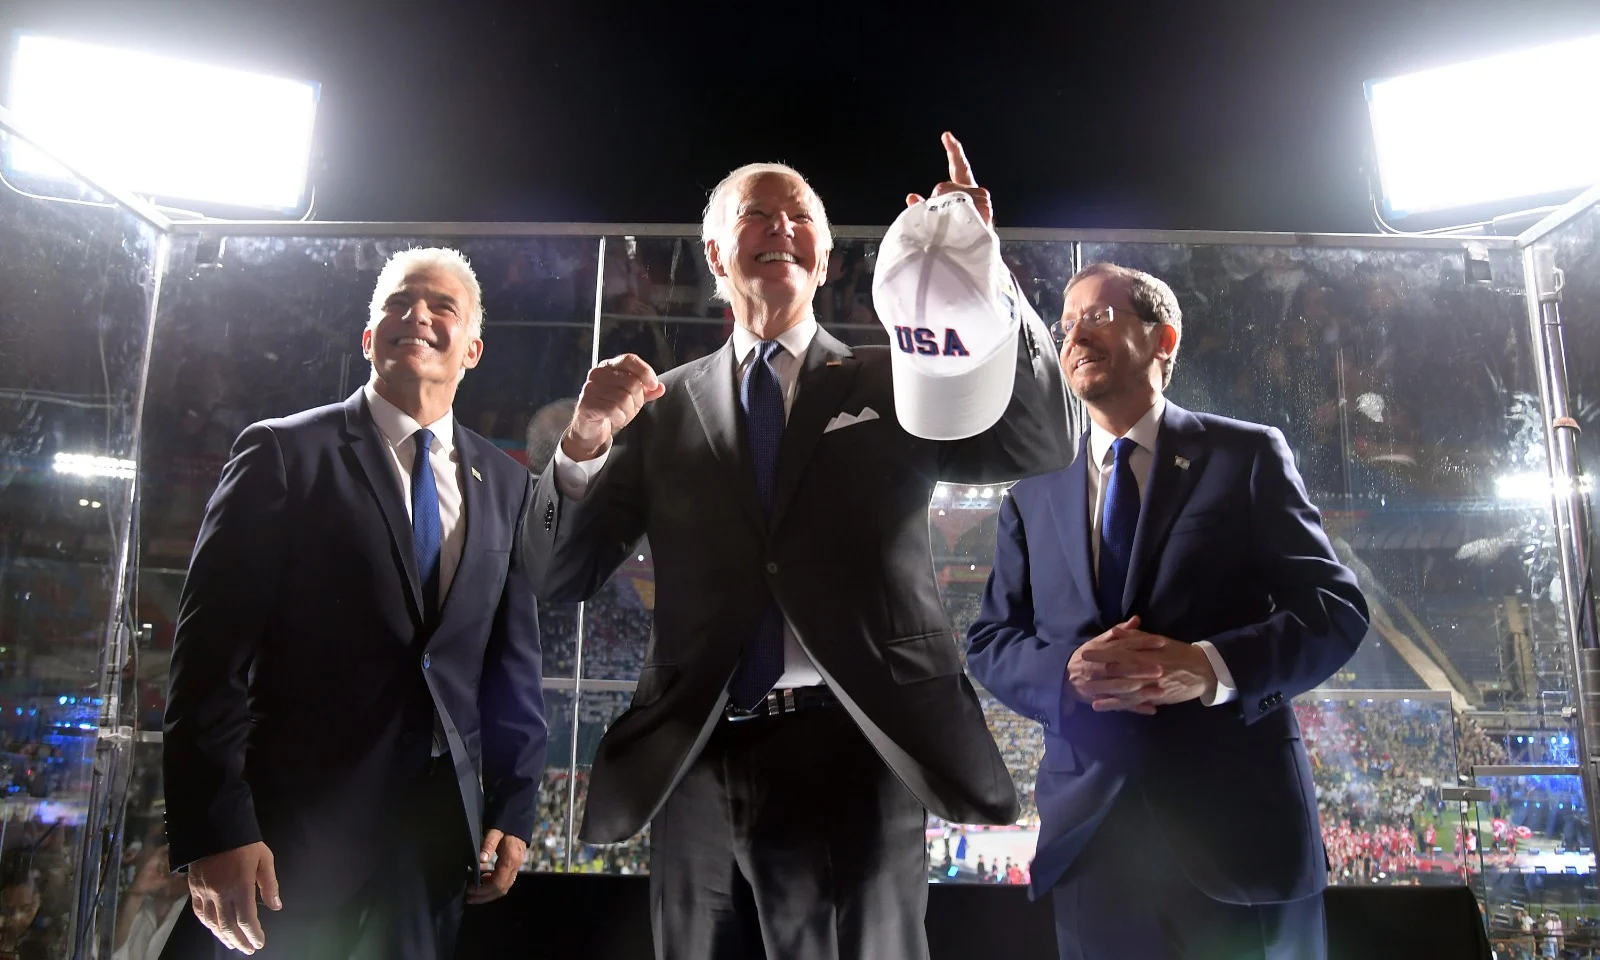 נשיא ארצות הברית ג'ו ביידן, נשיא המדינה יצחק הרצוג ורה''מ יאיר לפיד בטקס פתיחת המכביה באצטדיון טדי